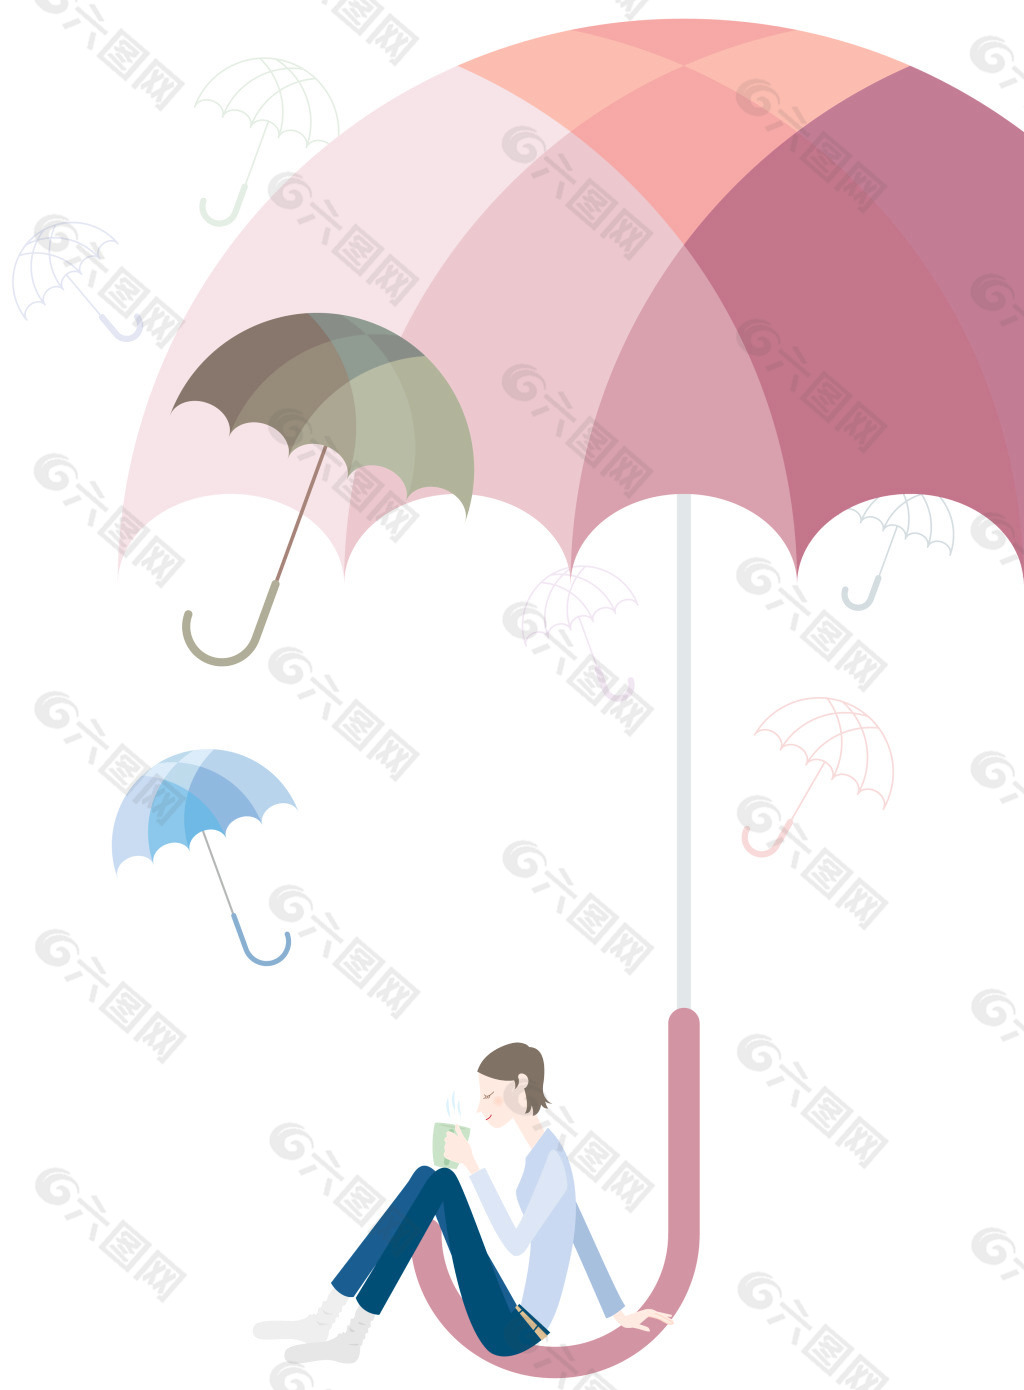 美女與雨傘